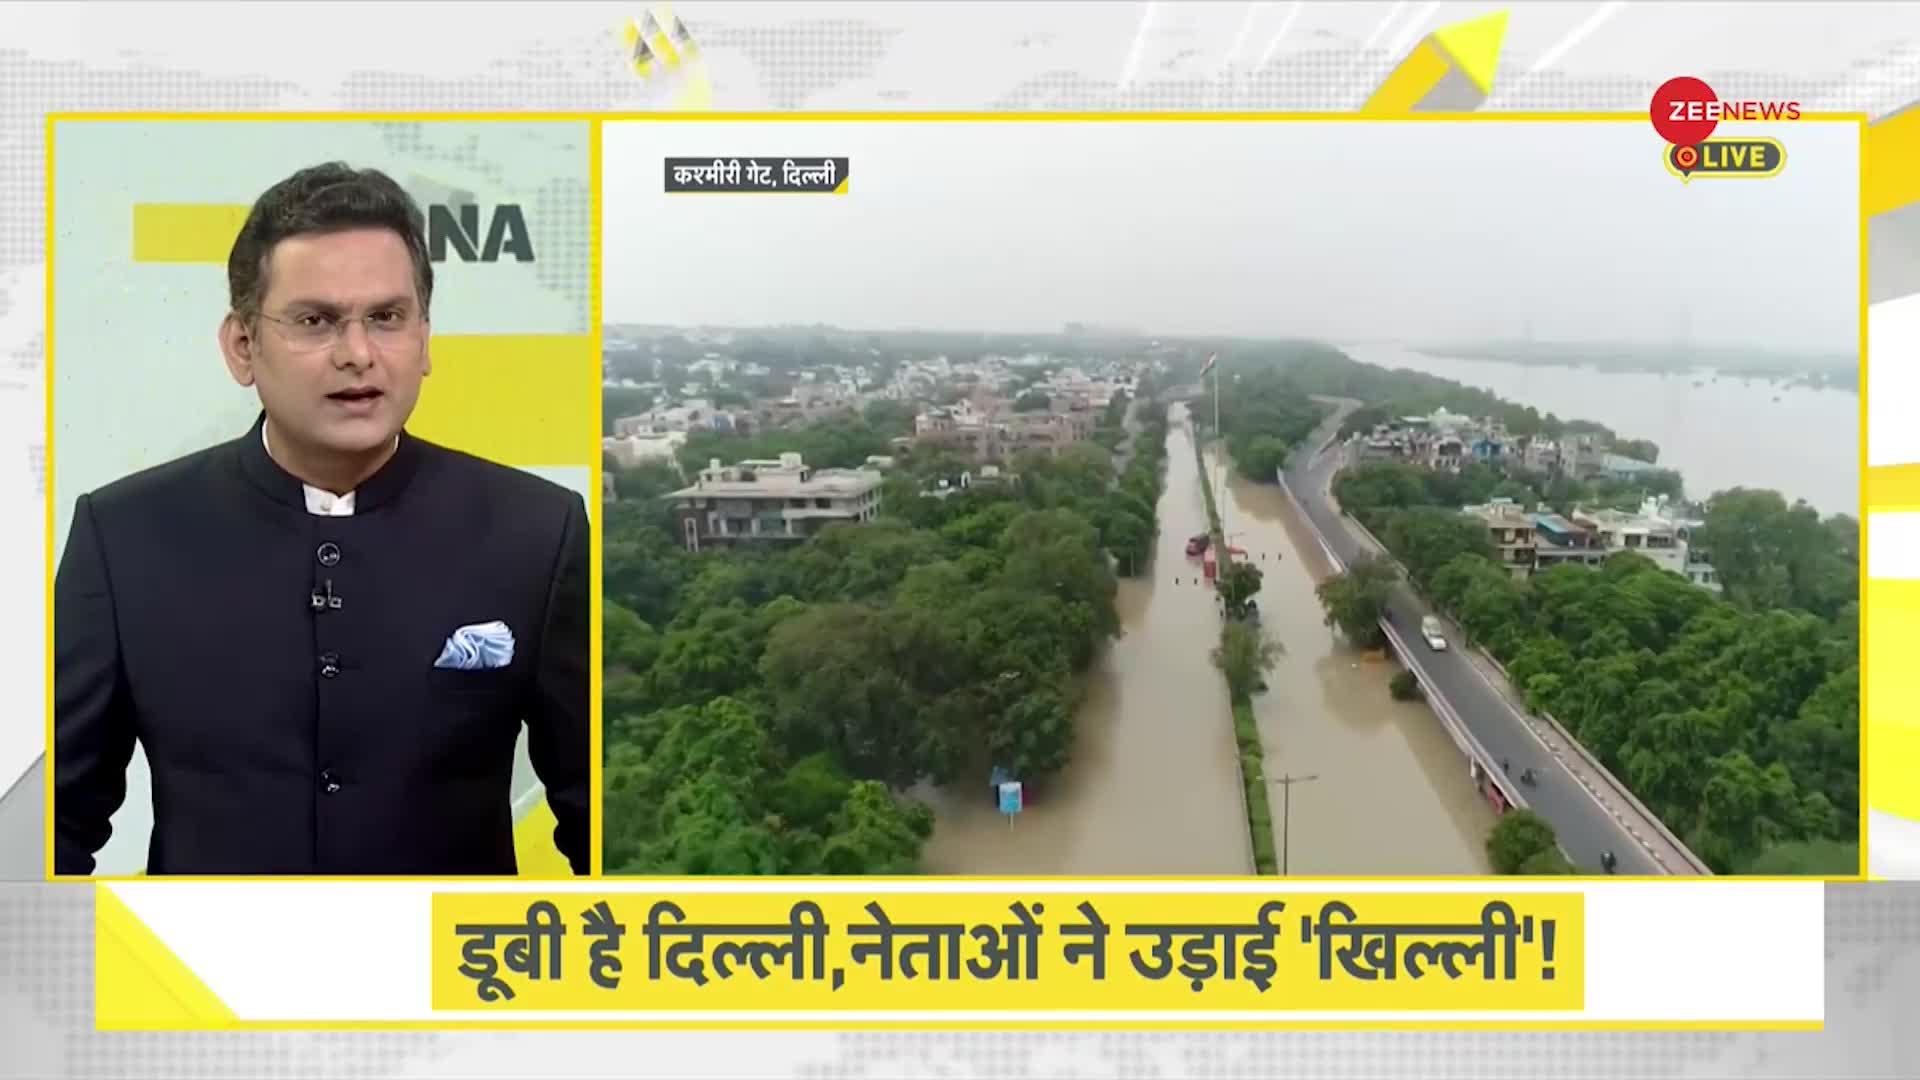 DNA: दिल्ली की बाढ़ पर राजनीतिक विश्लेषण, डूबी है दिल्ली नेताओं ने उड़ाई 'खिल्ली'